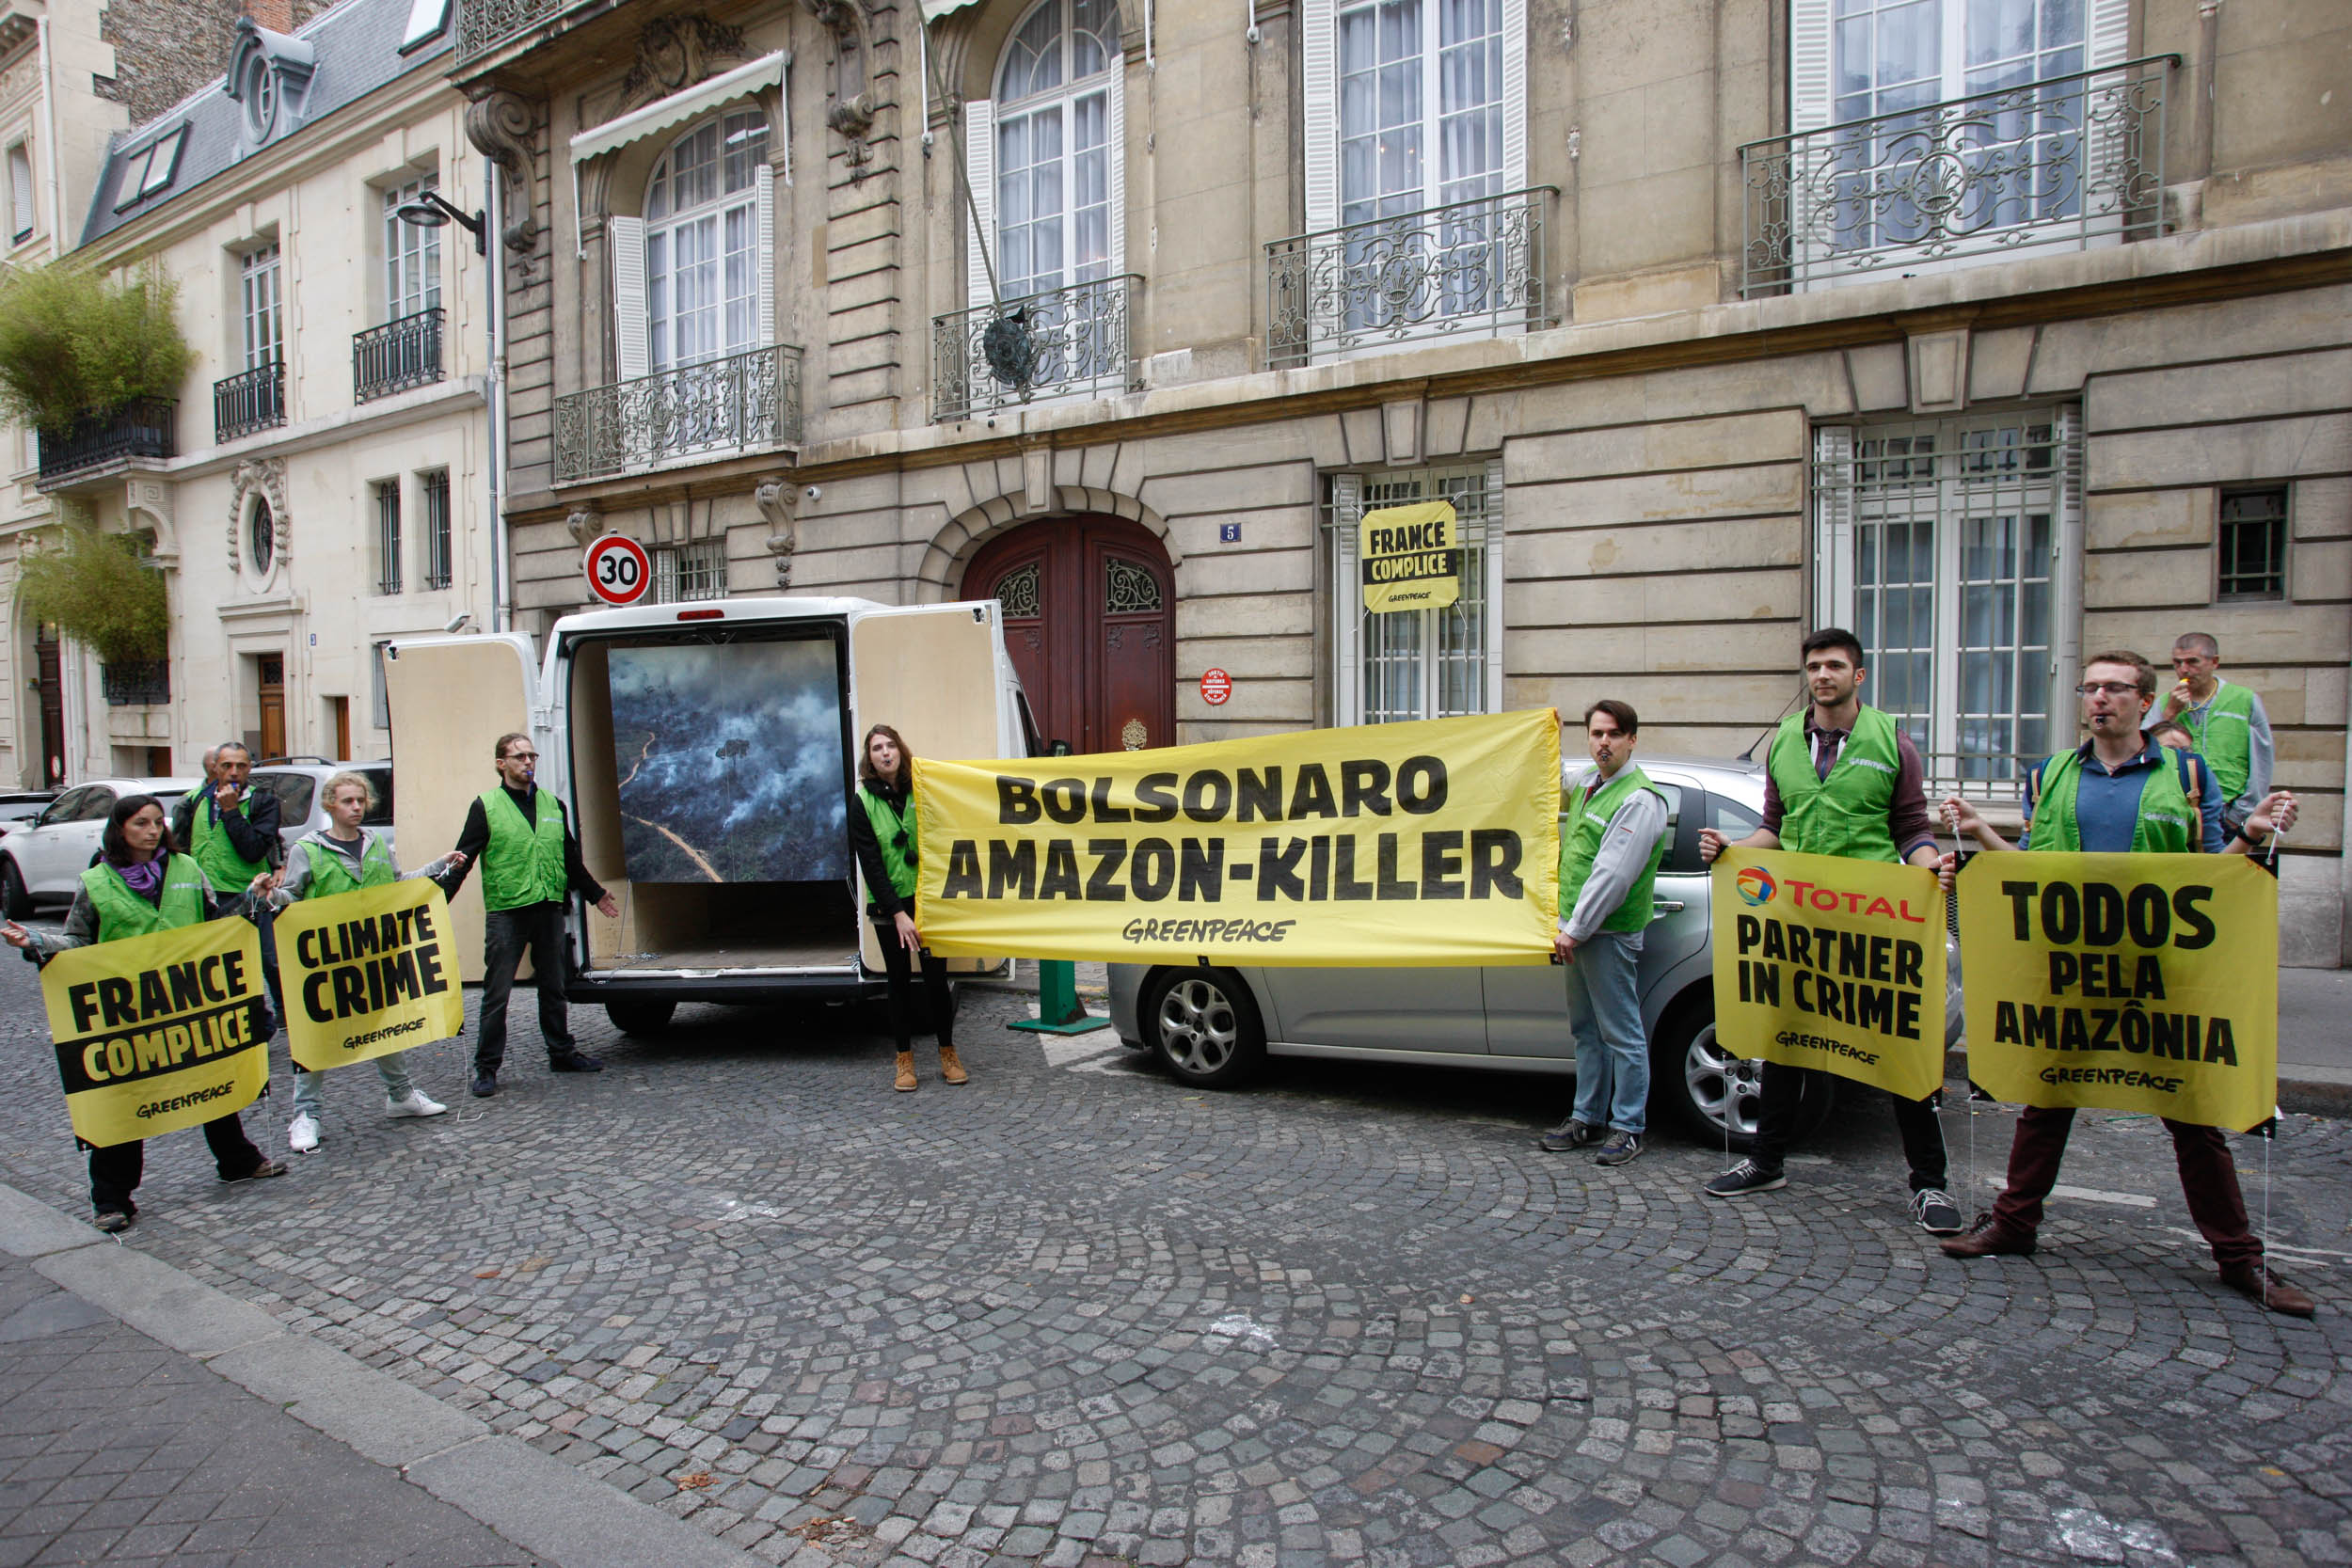 Ricardo Salles deve ser retirado imediatamente do Ministério de Meio  Ambiente - Greenpeace Brasil